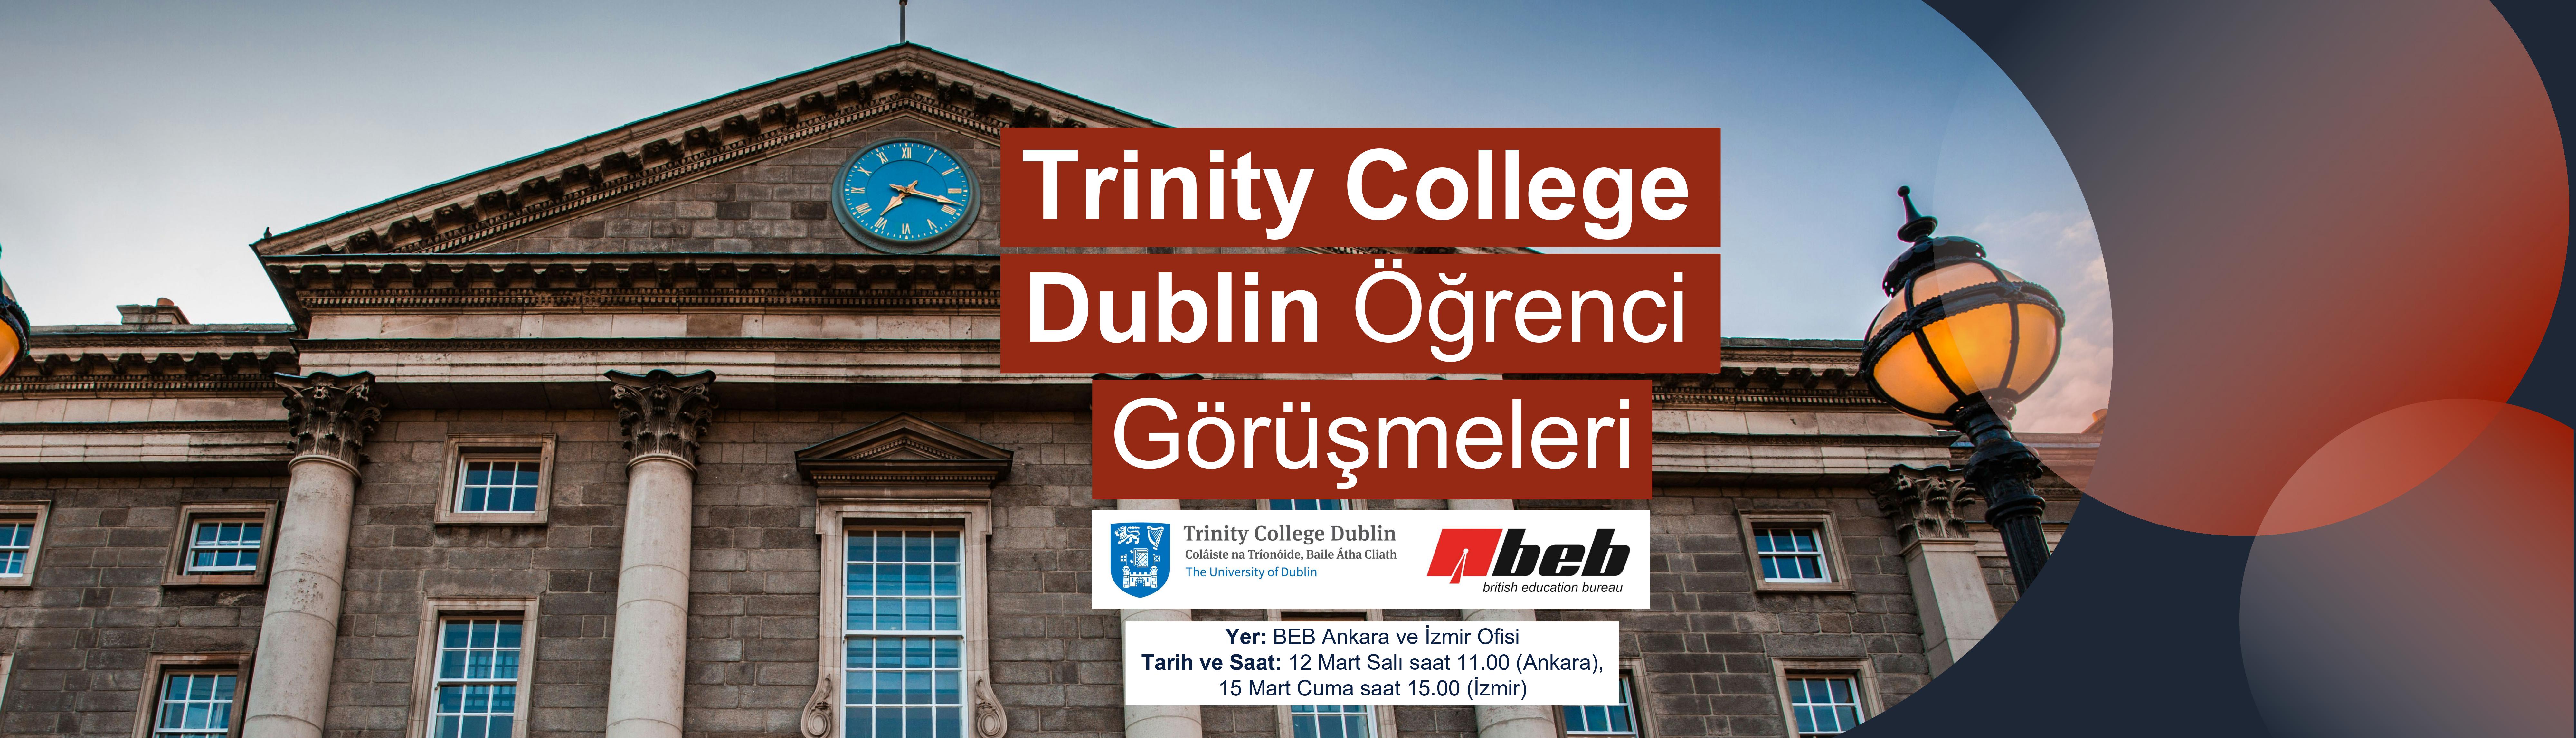 Trinity-College-Dublin-Ogrenci-Gorusmeleri-Ankara-ve-Izmirde---BEB